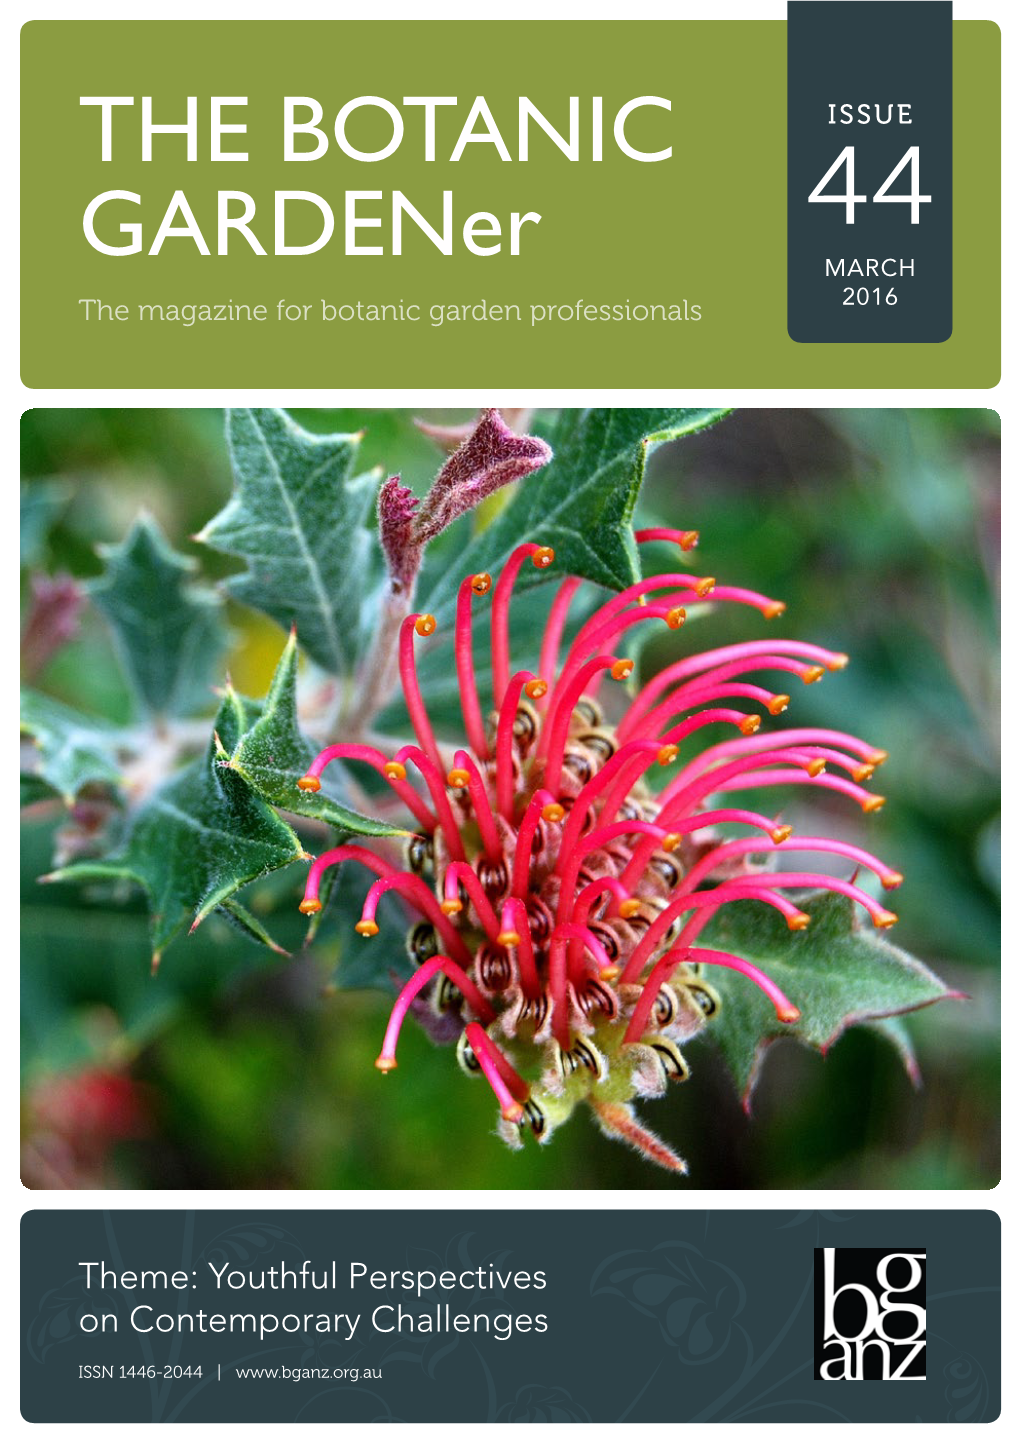 THE BOTANIC Gardener Issue 44